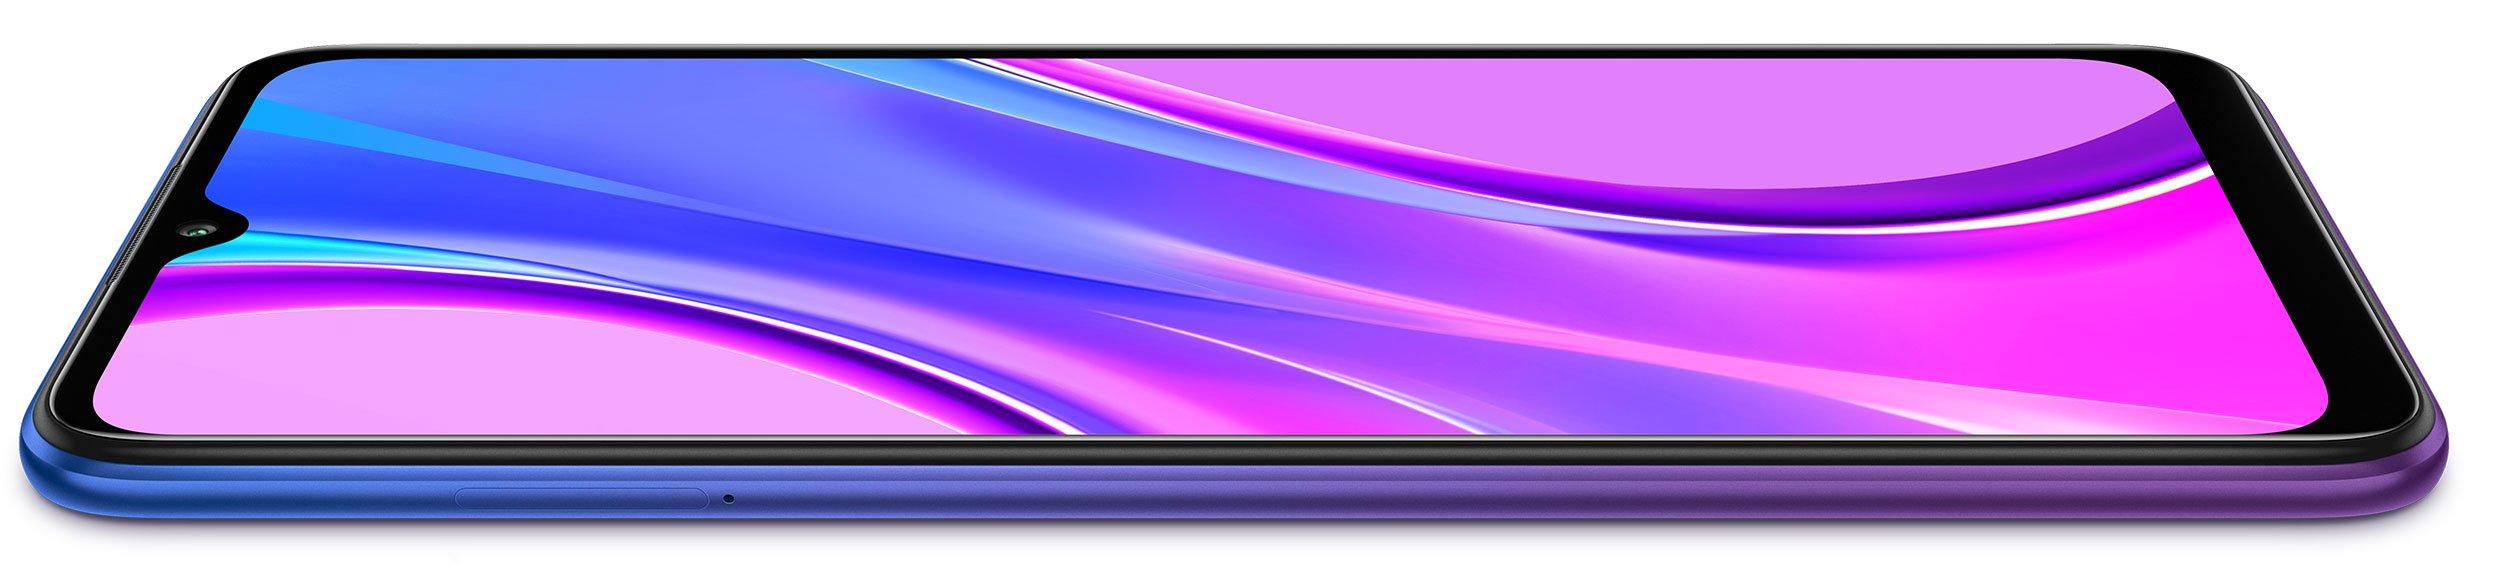 Купить Смартфон Xiaomi Redmi 9 4/64Gb Purple